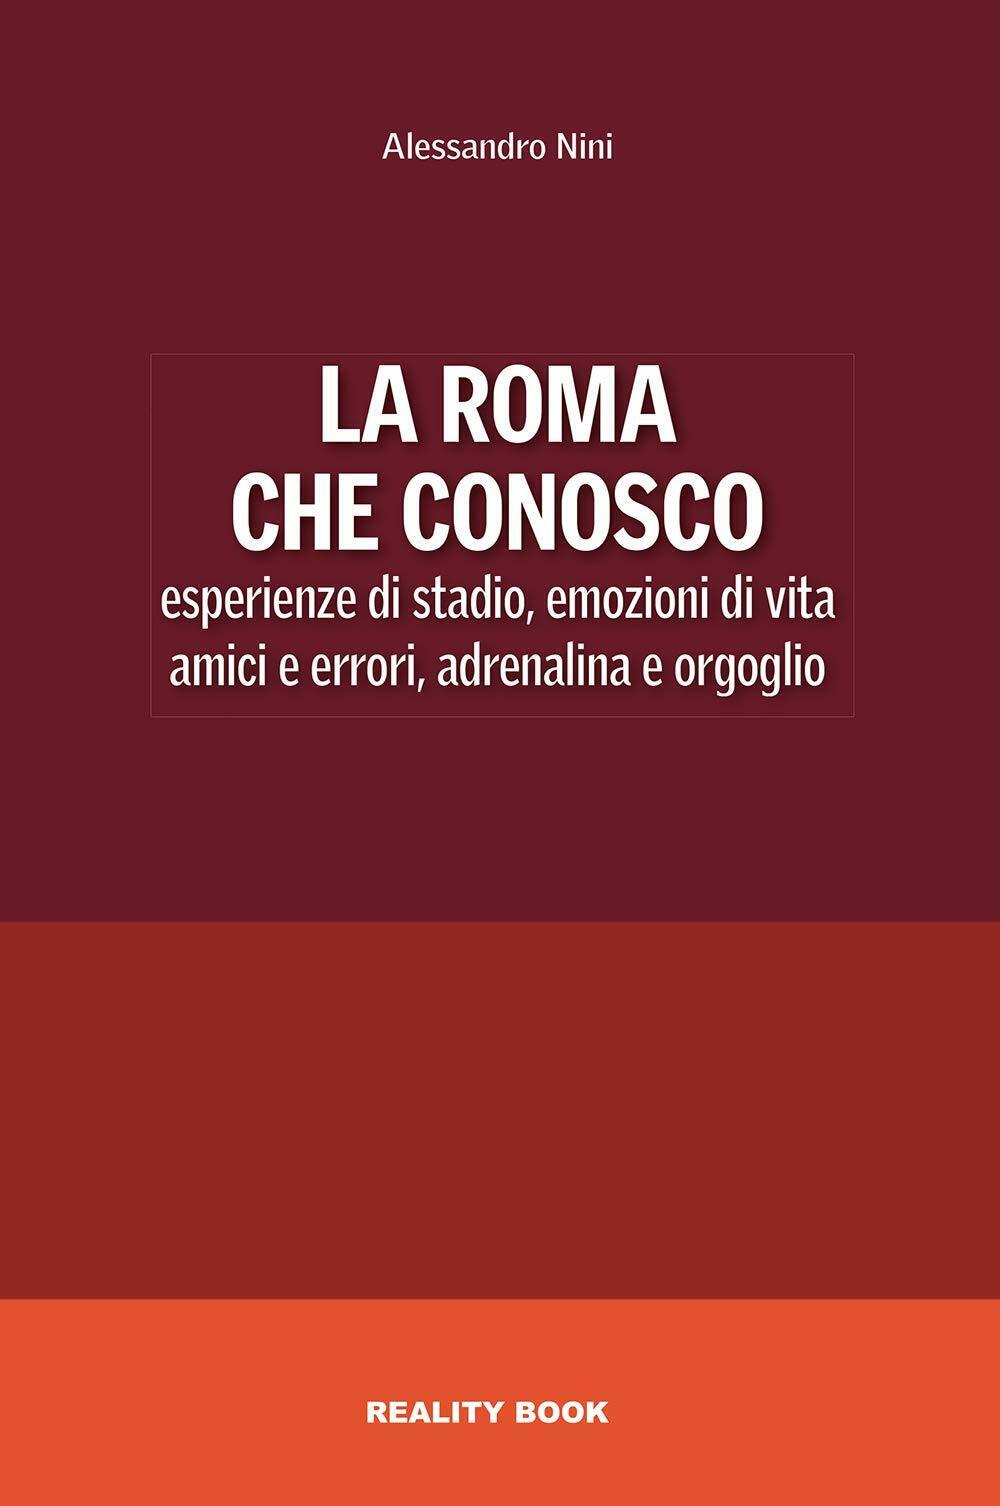 La Roma che conosco - Alessandro Nini - Reality Book, 2021 libro usato